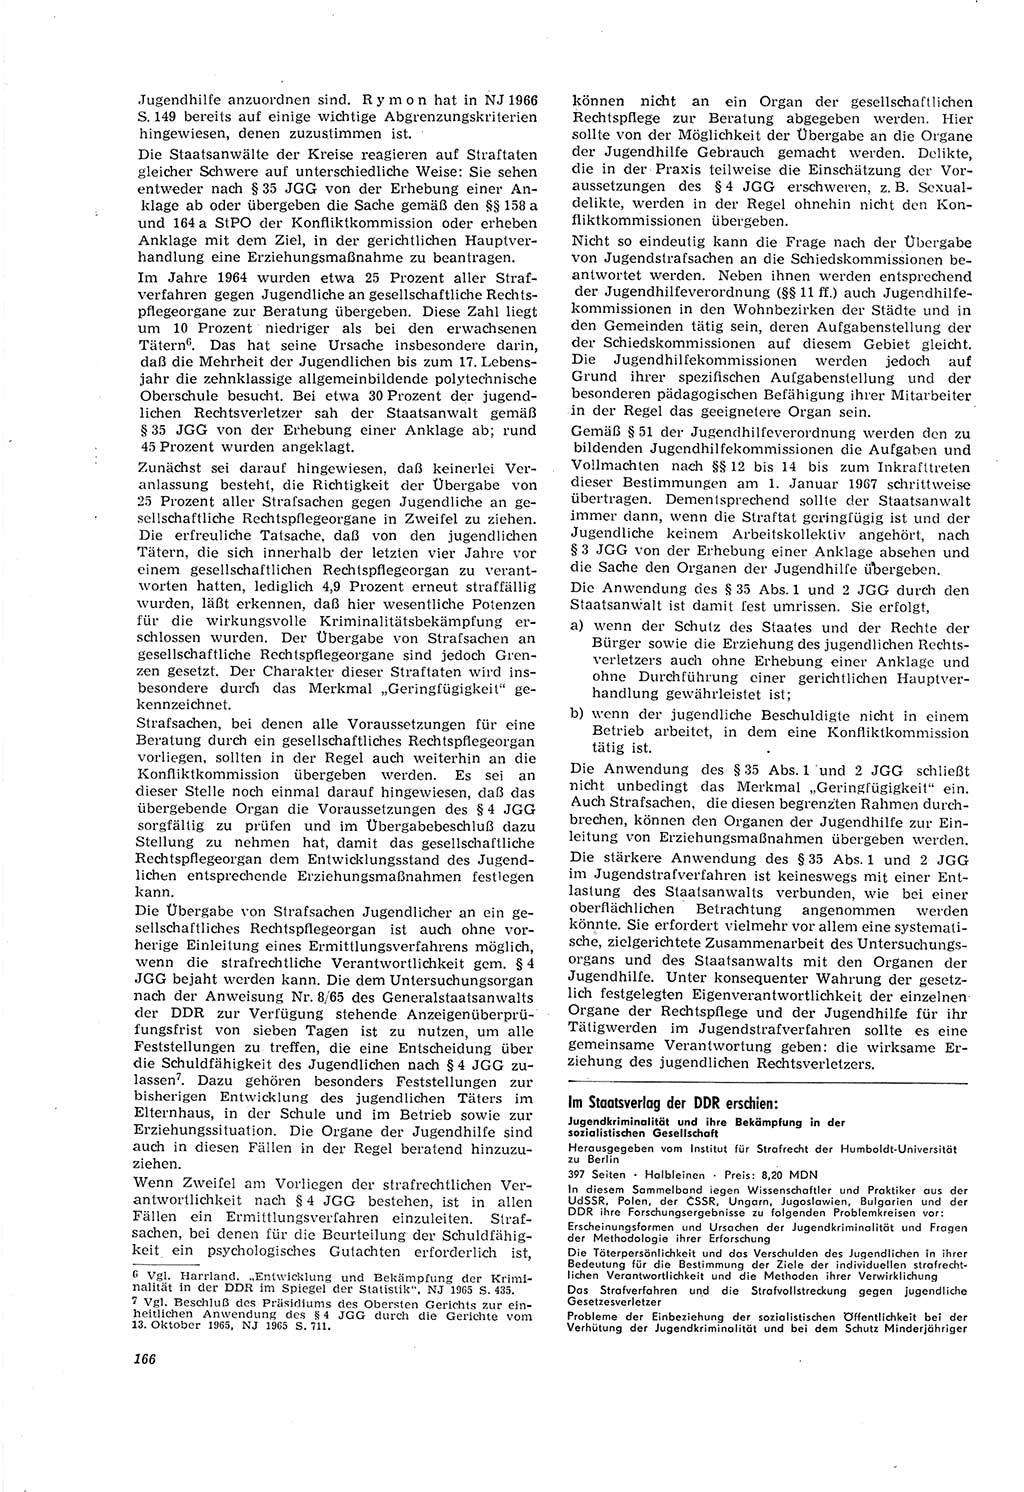 Neue Justiz (NJ), Zeitschrift für Recht und Rechtswissenschaft [Deutsche Demokratische Republik (DDR)], 20. Jahrgang 1966, Seite 166 (NJ DDR 1966, S. 166)